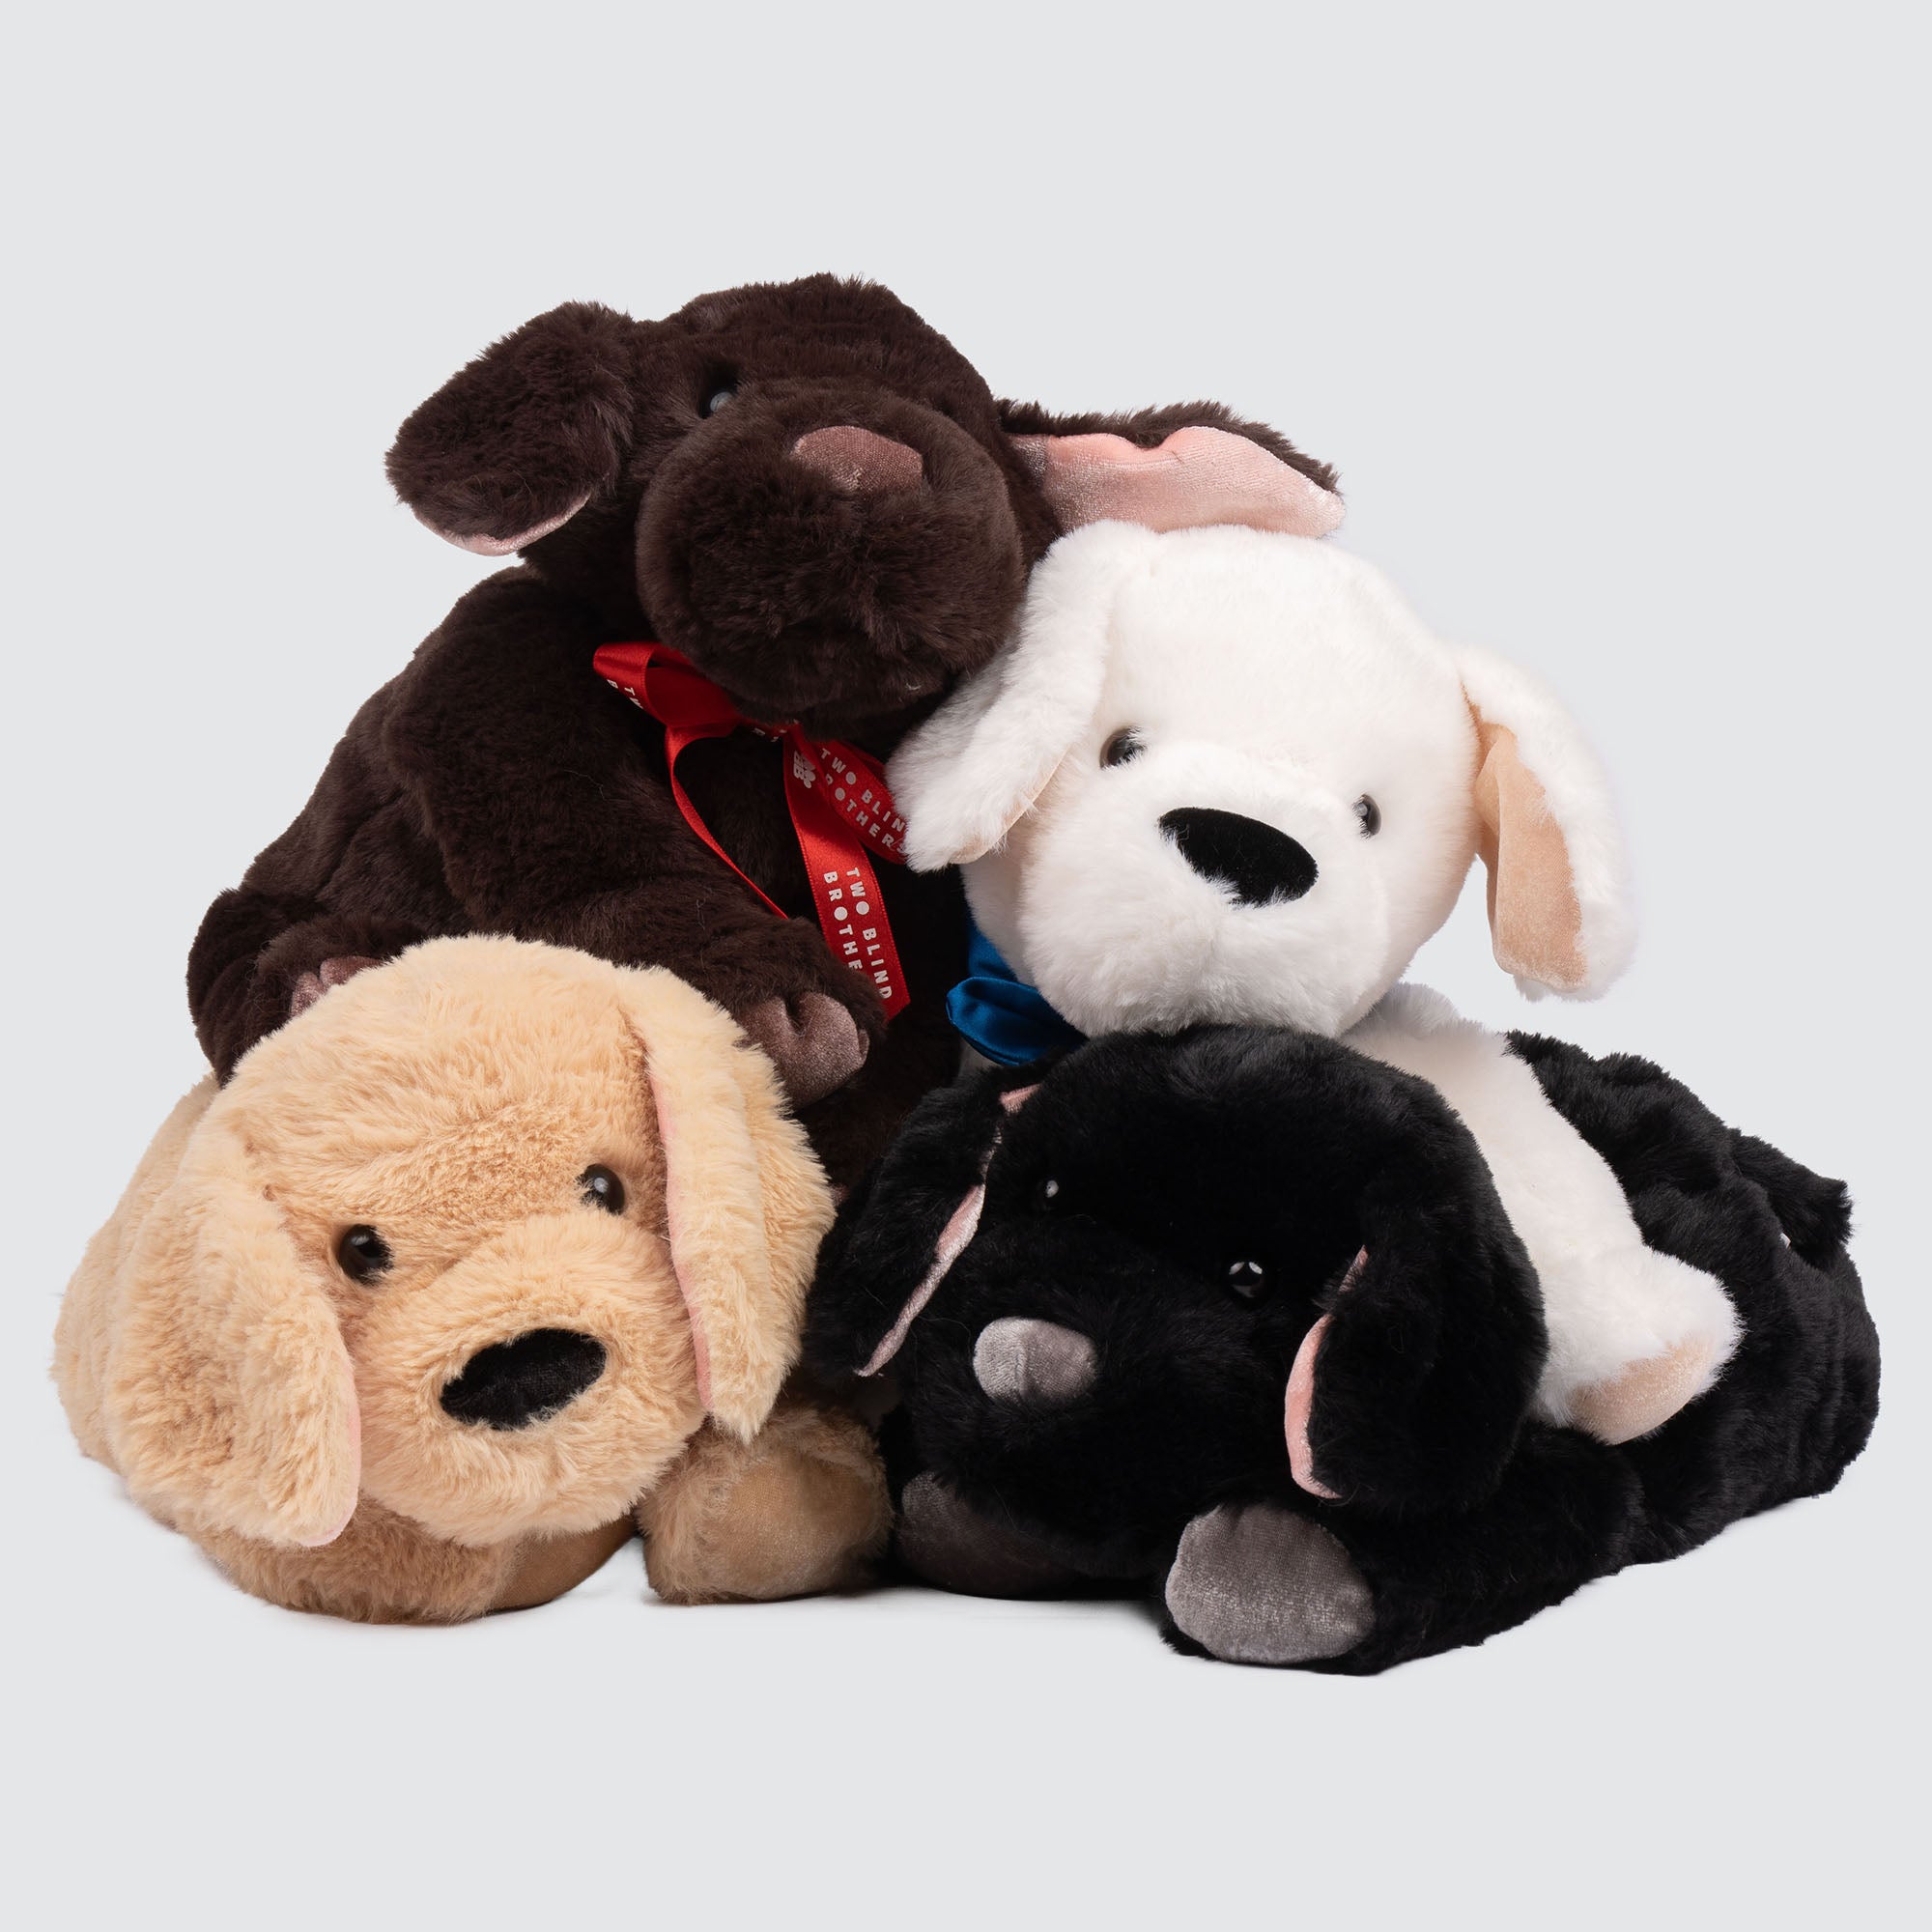 2bb Stuffed Animal Dog Collection